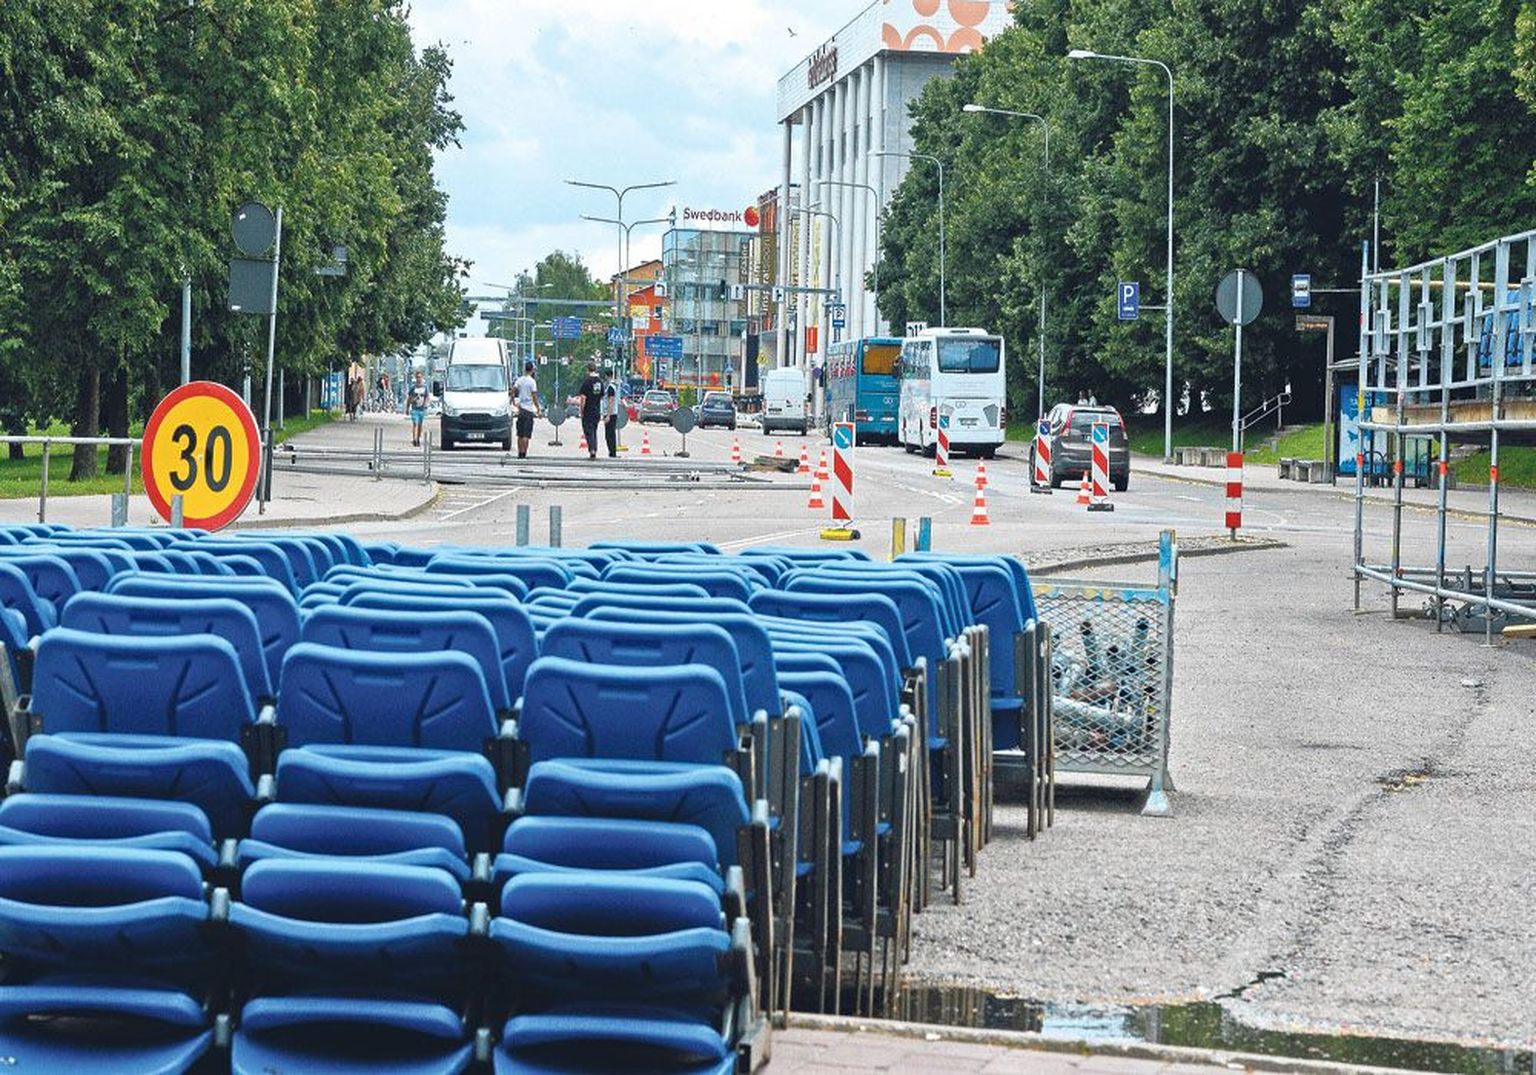 Vabaduse puiesteel algasid Rally Estonia ettevalmistused esmaspäeva õhtul tribüüni ehitamisega. Eile õhtust esmaspäeva, 18. juuli õhtuni on Vabaduse puiestee ralli tõttu 
turuhoonest raeplatsini suletud. Tasub tähele panna, et see toob muudatusi ka linnaliinibusside sõiduplaani.